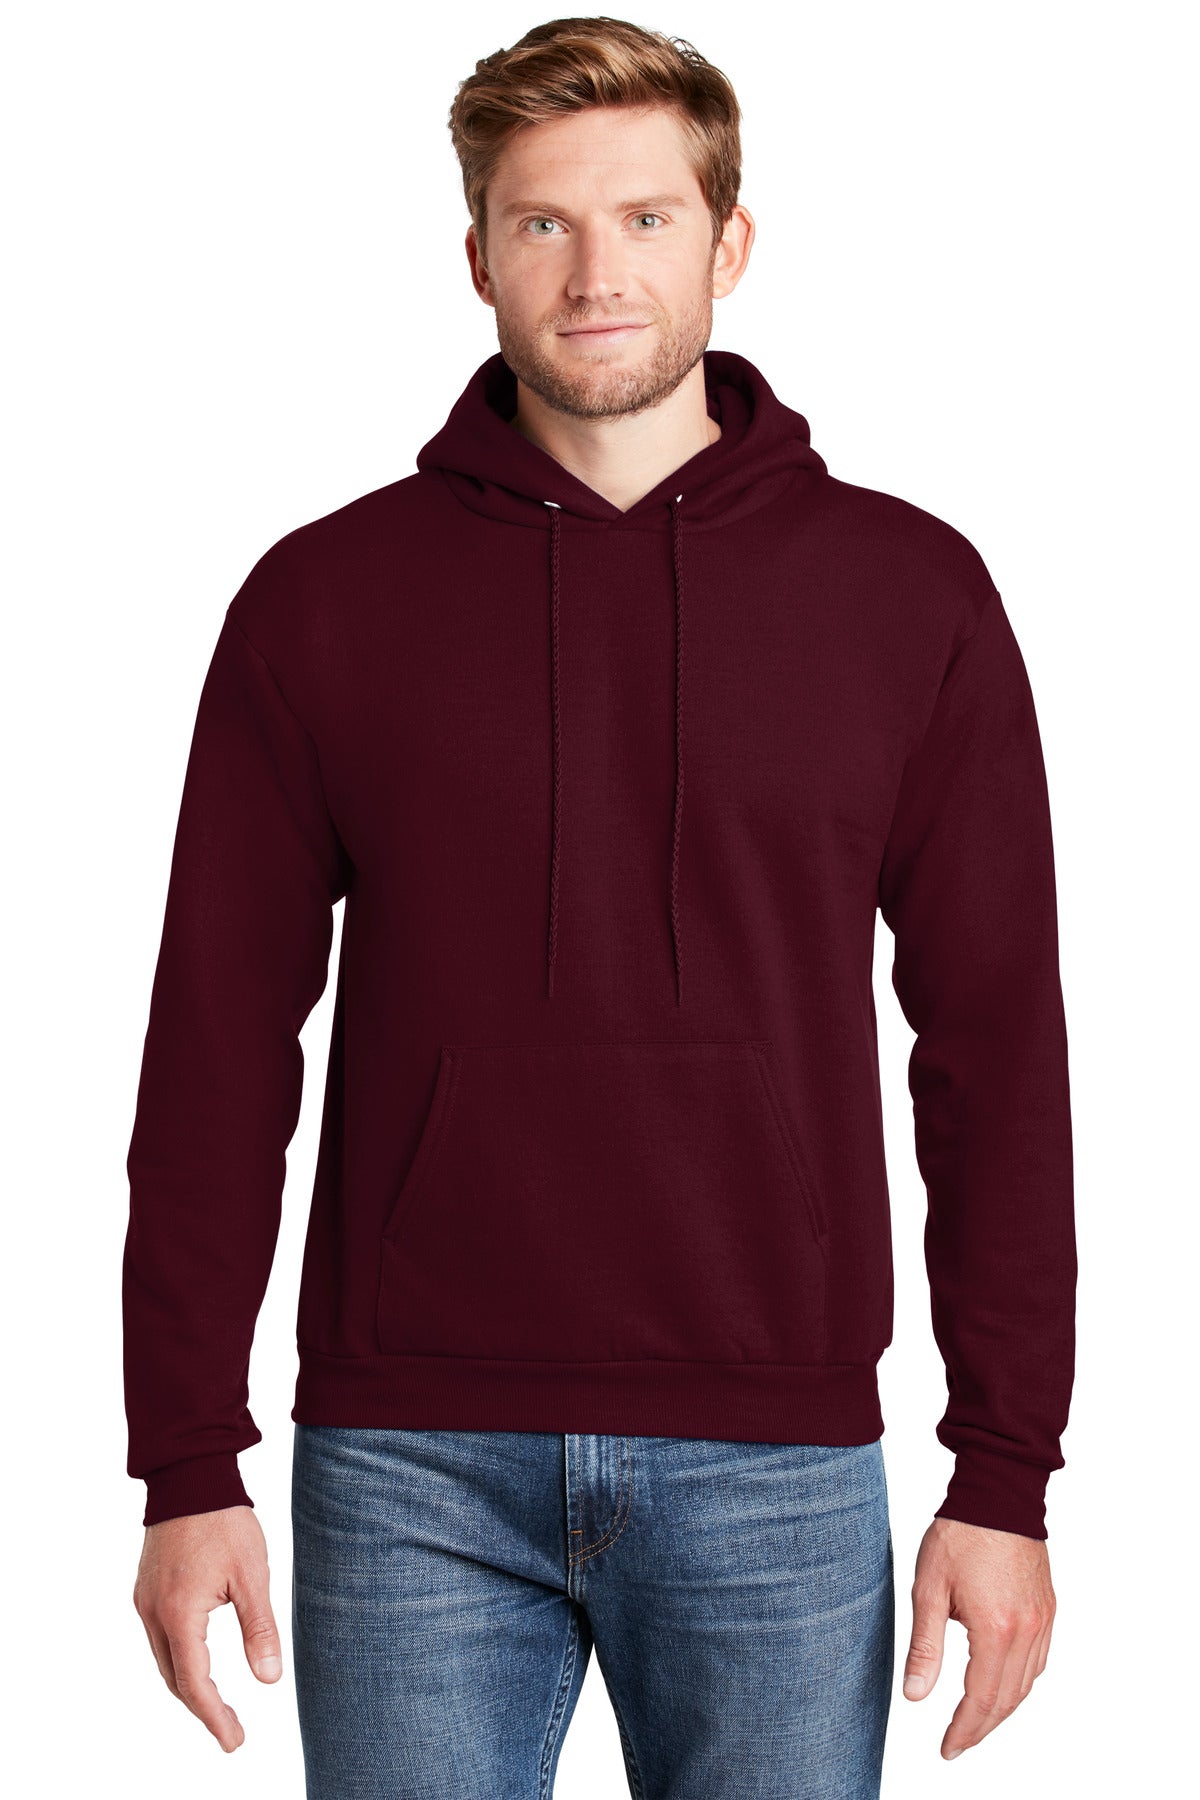 Sweatshirts/Fleece Maroon Hanes